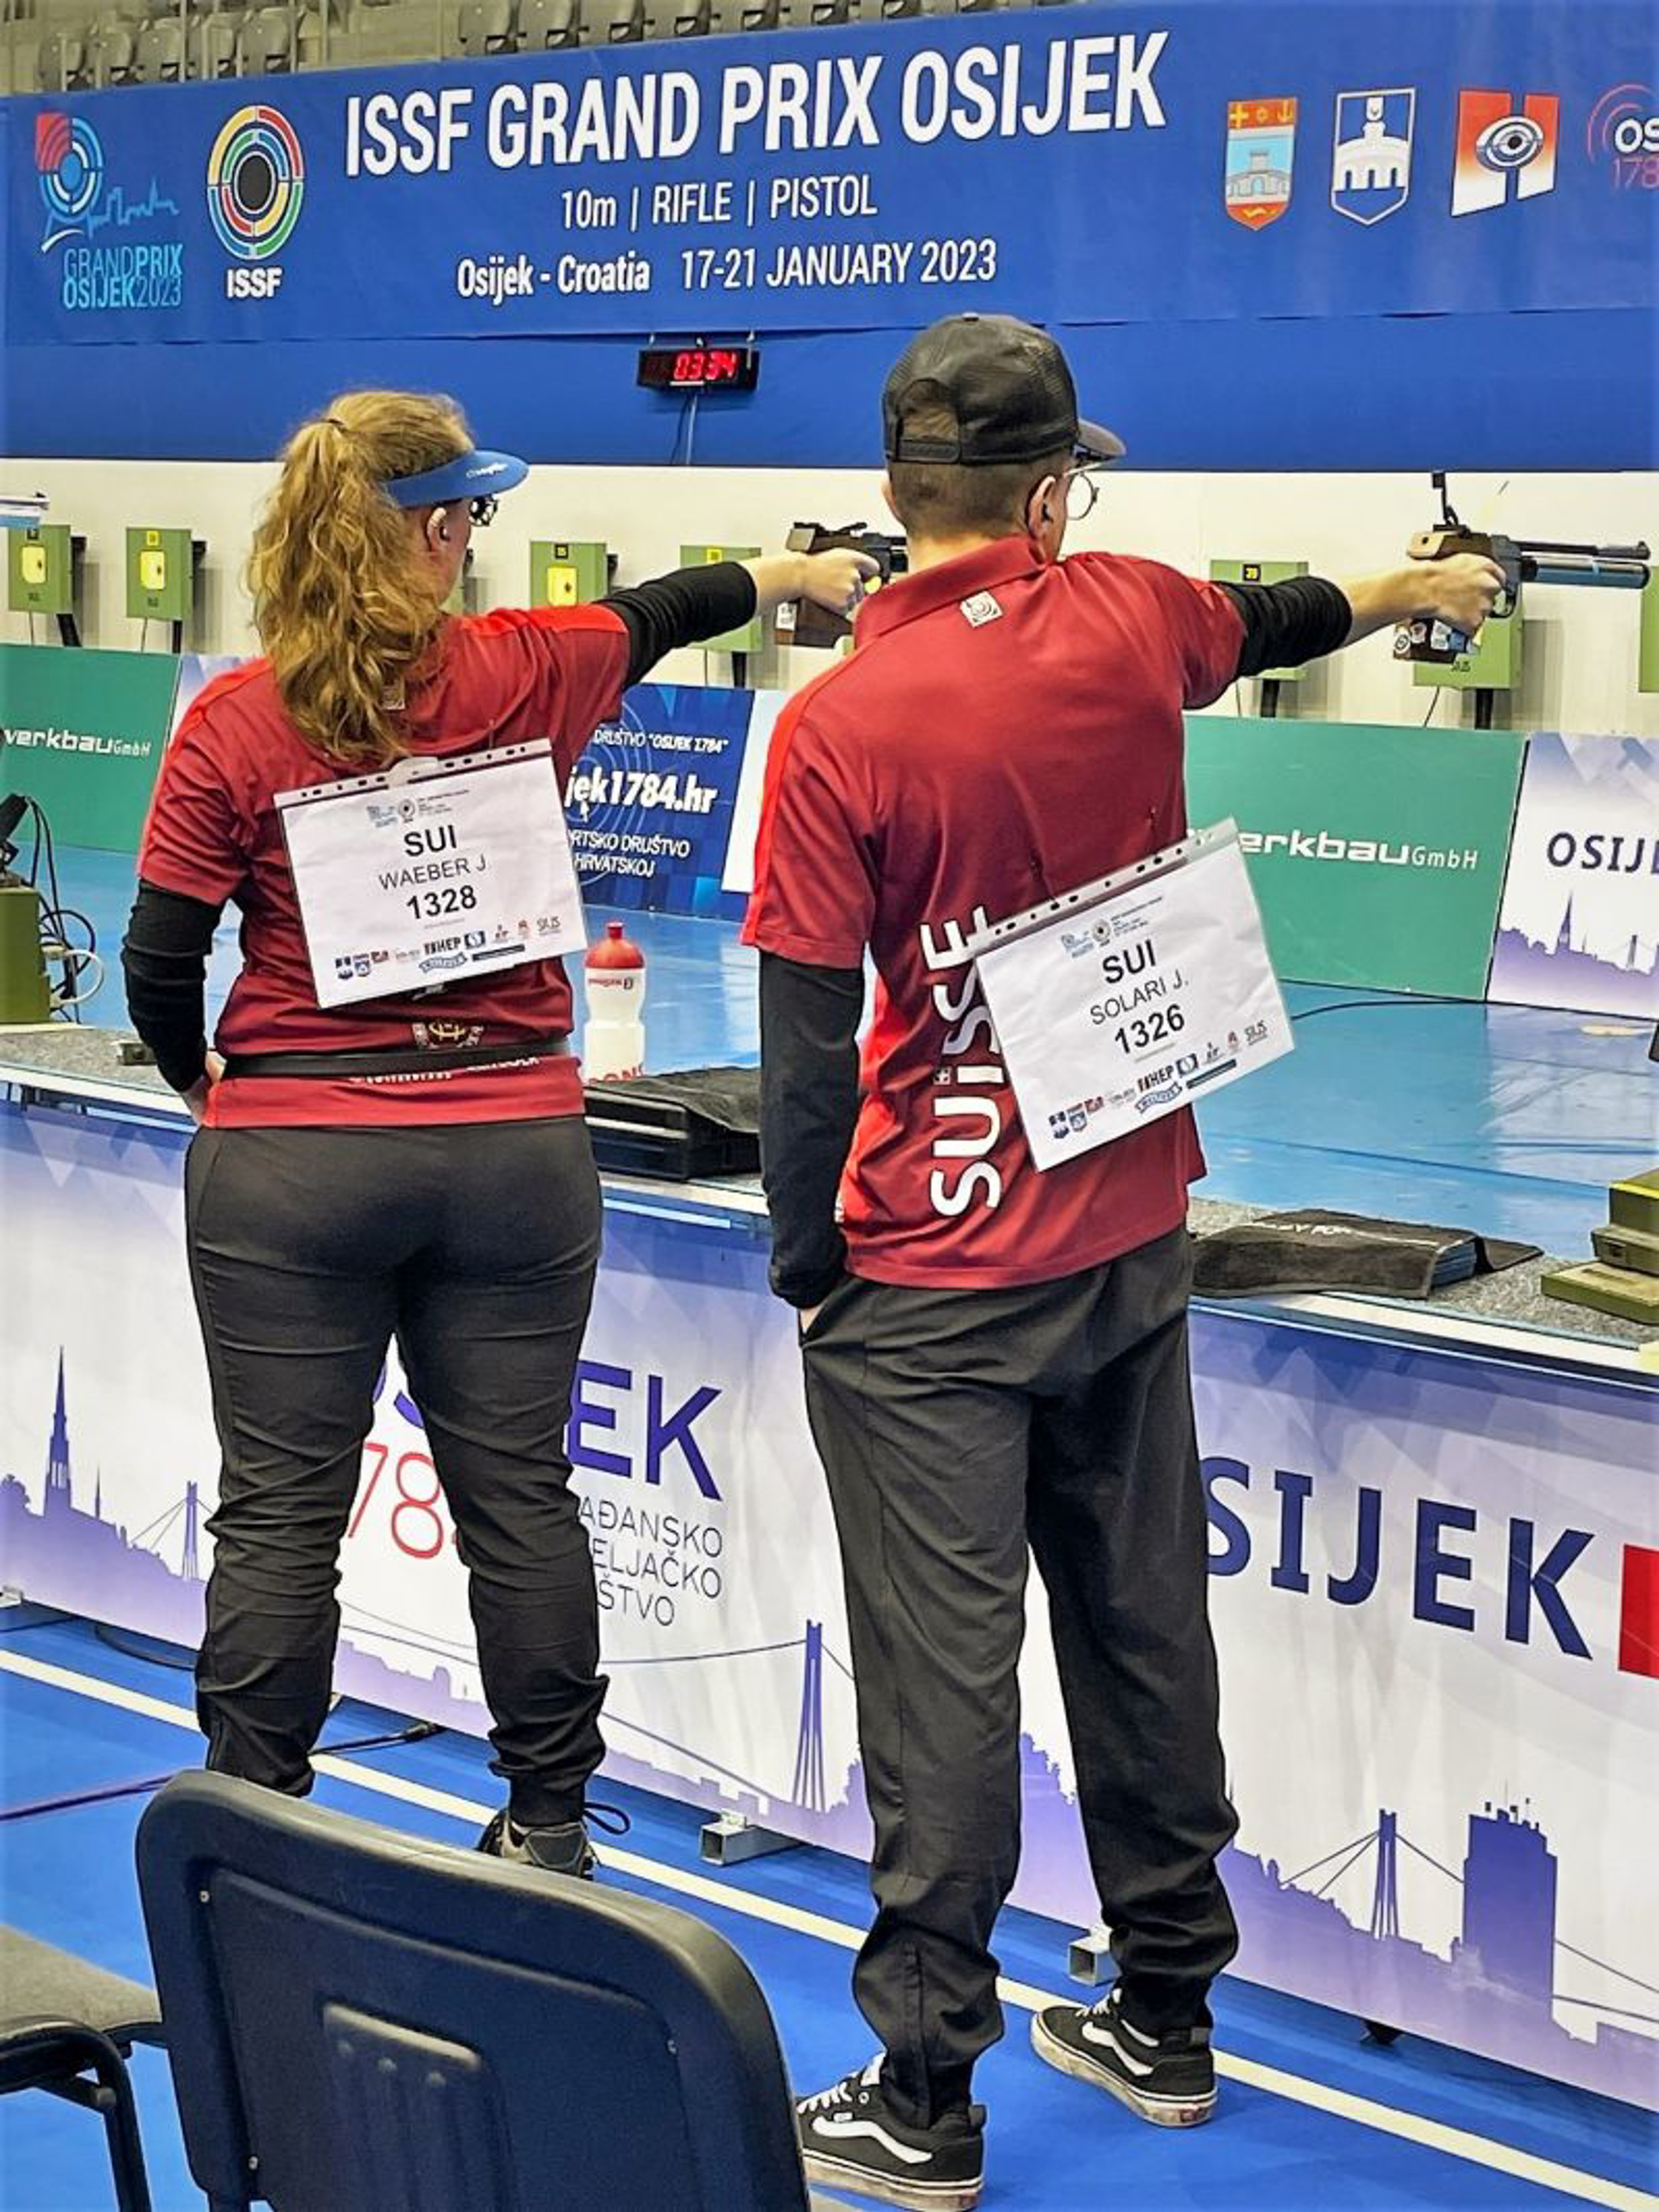 Jessica Waeber und Jason Solari während des Mixed Team-Wettkampfes.